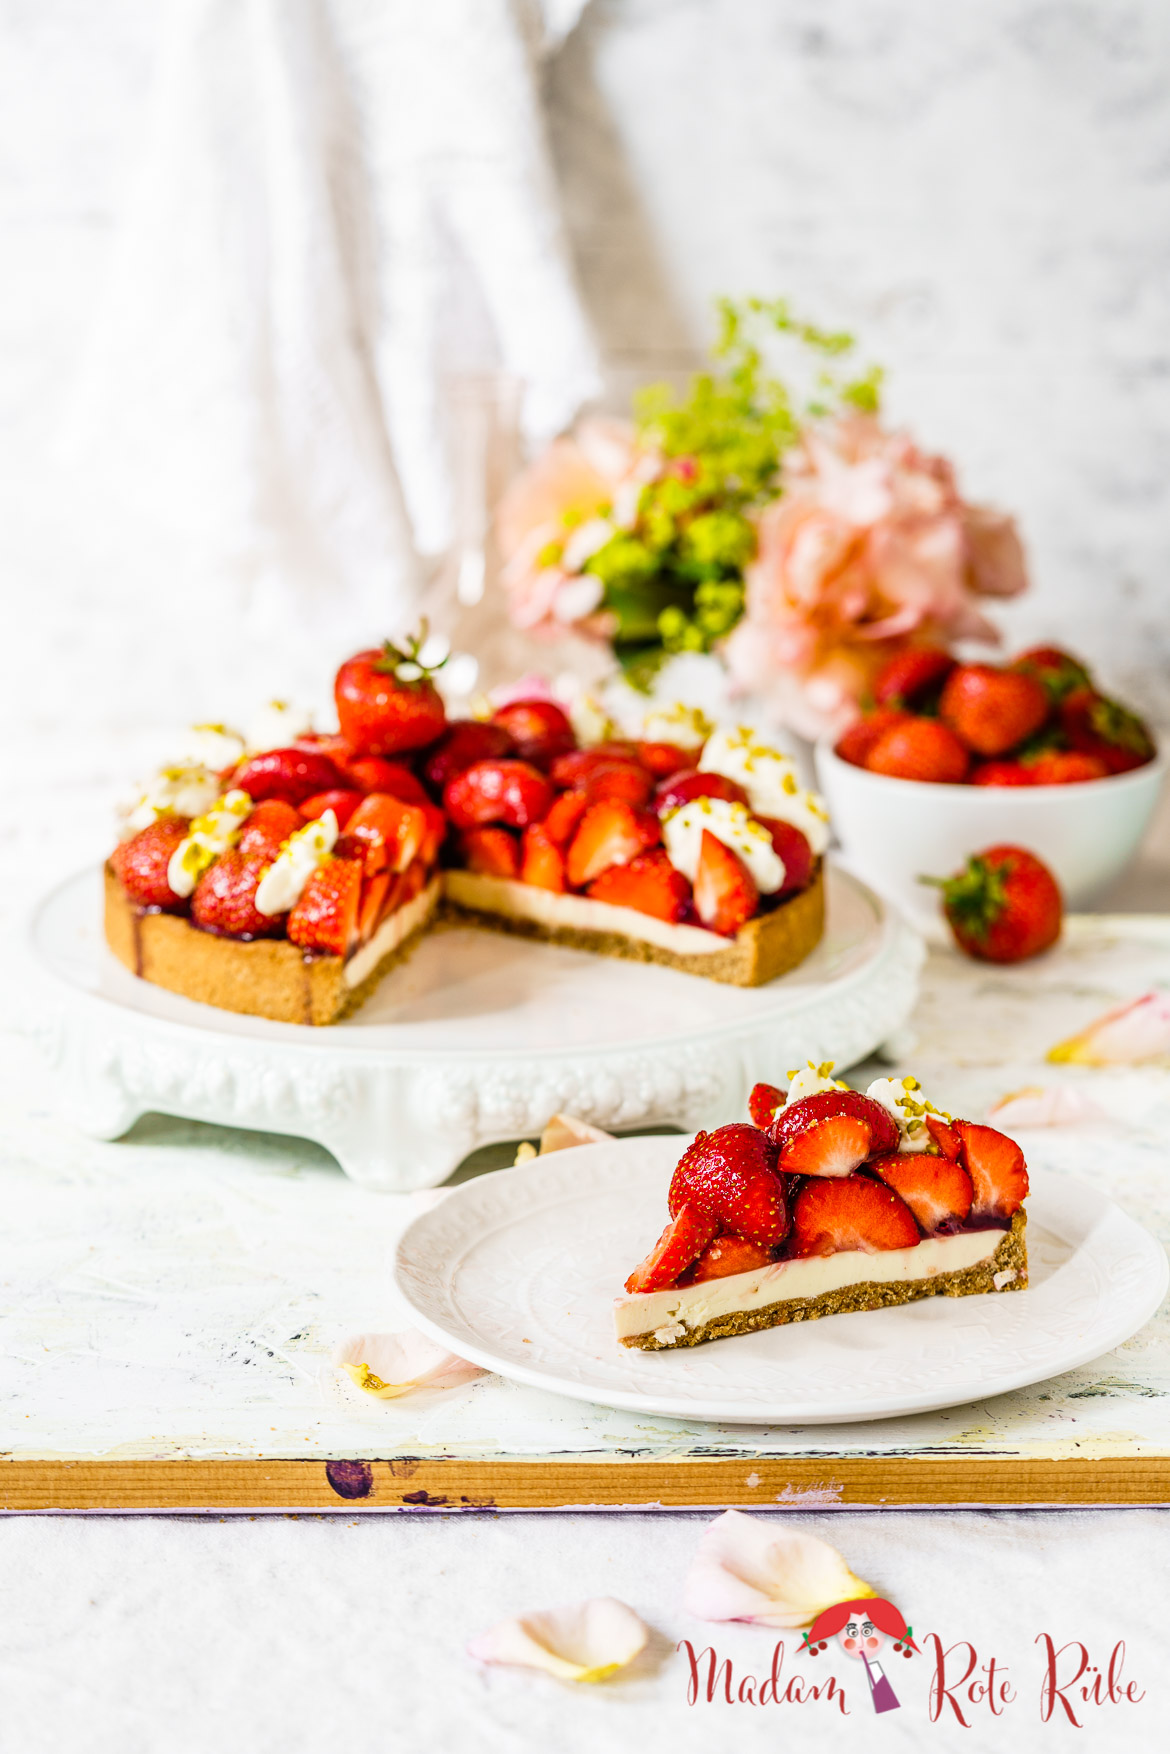 Madam Rote Rübe - Erdbeer-Vollkornkuchen mit Vanillecreme